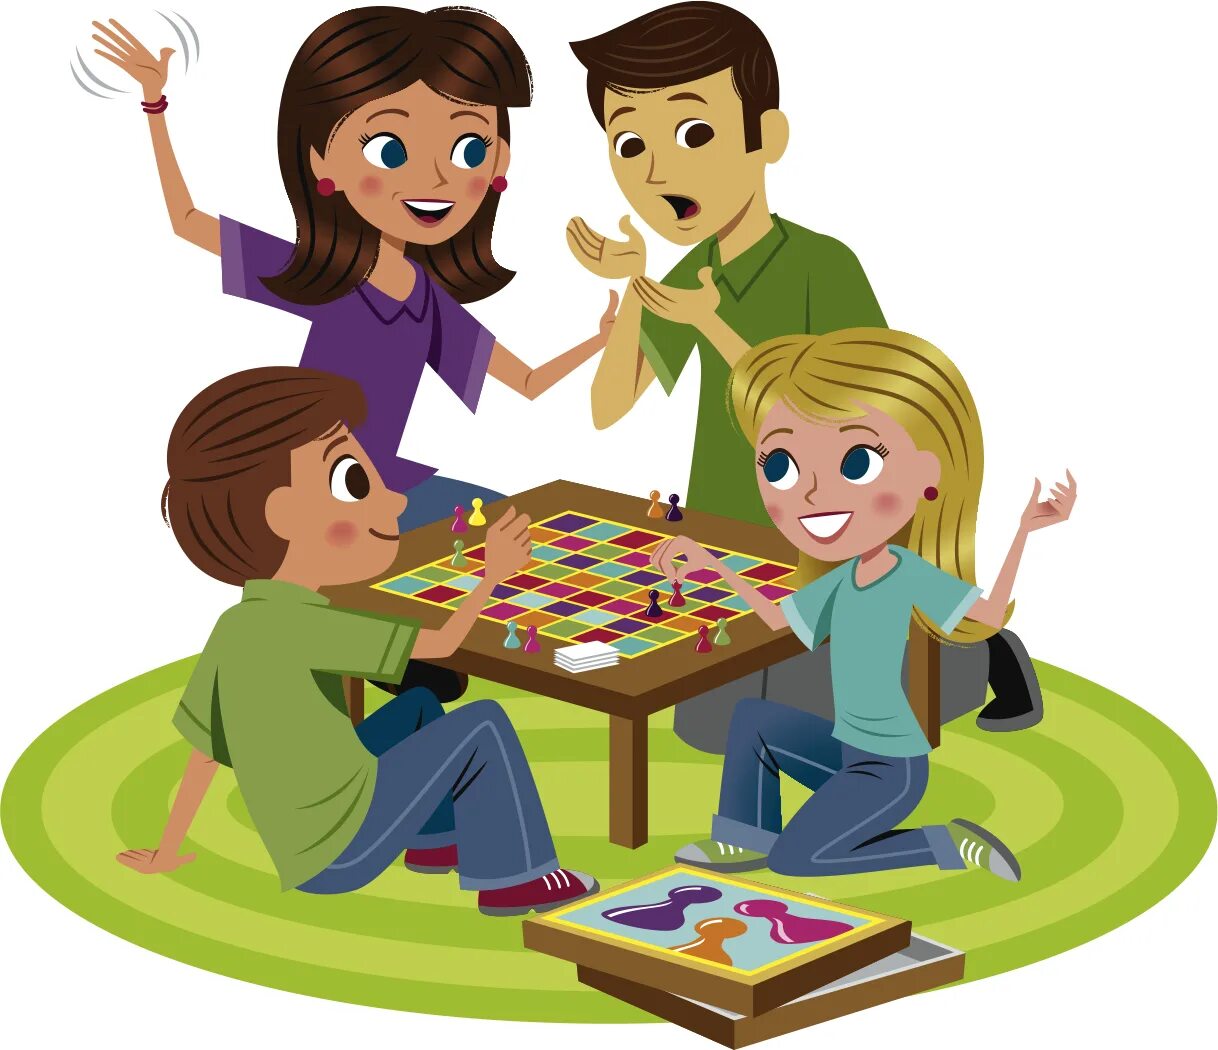 Games first friends. Семейные игры. Дети играют в настольные игры. Игры родителей с детьми. Игры детей с родителями.